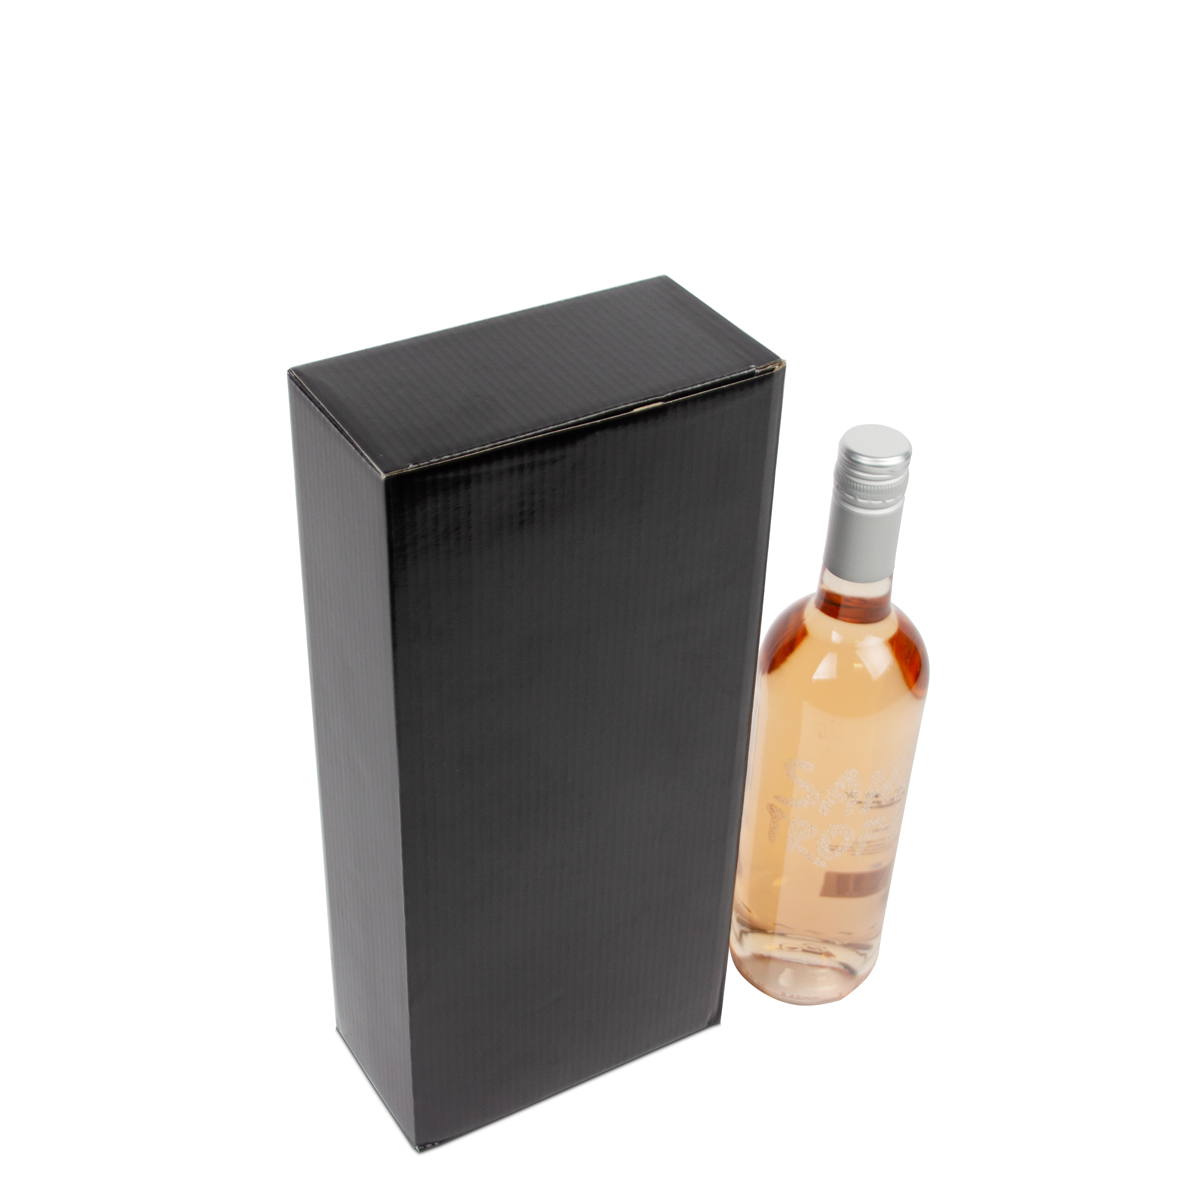 Commander boîtes en carton pour bouteilles de vin